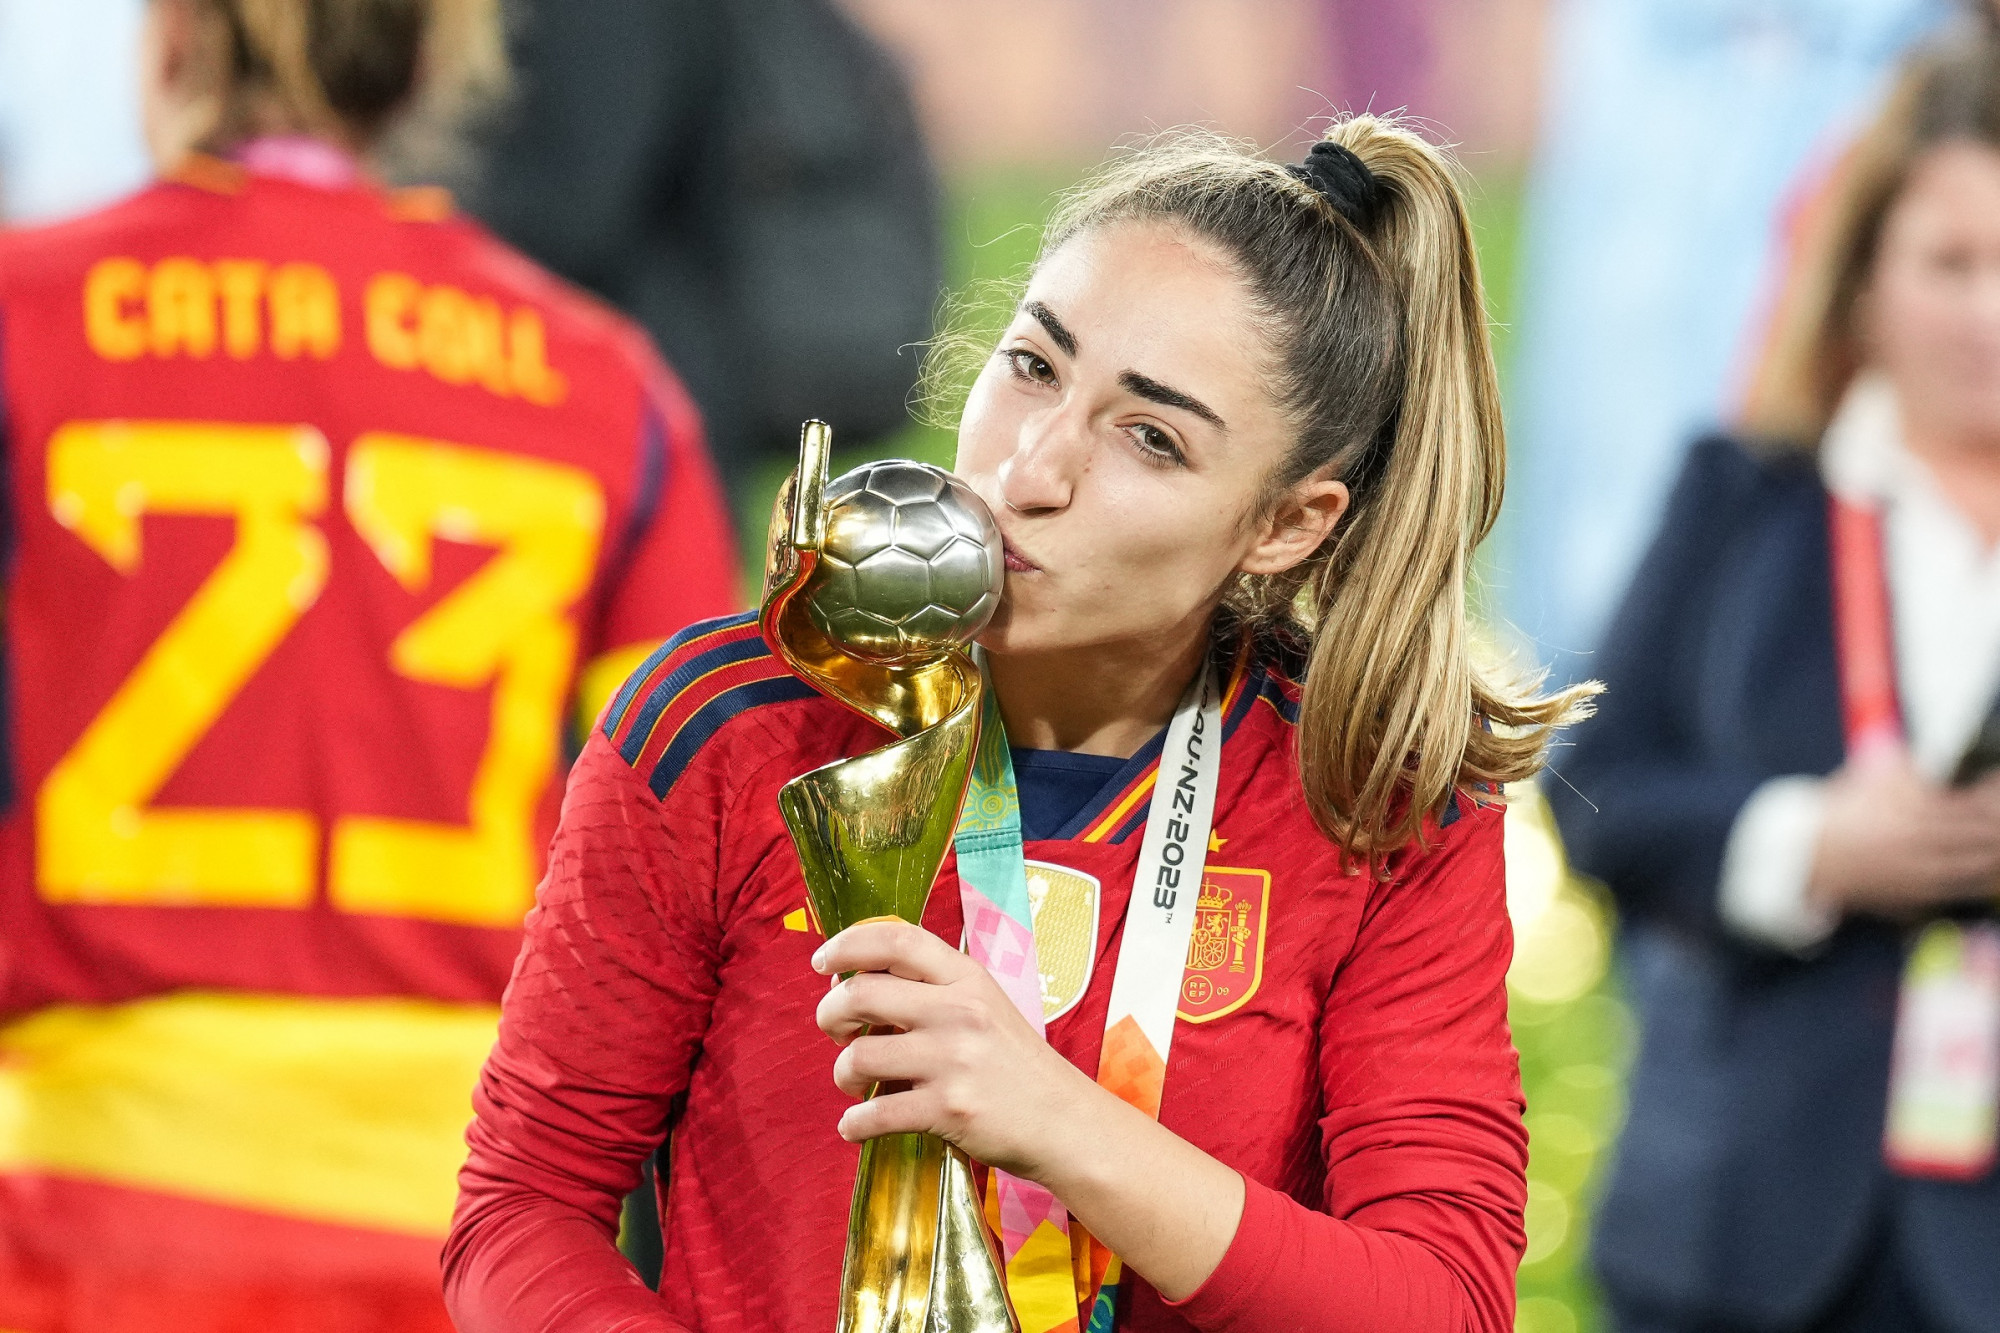 A spanyolok győztes gólját szerző Olga Carmona a női focivébédöntő után tudta meg, hogy meghalt az apja